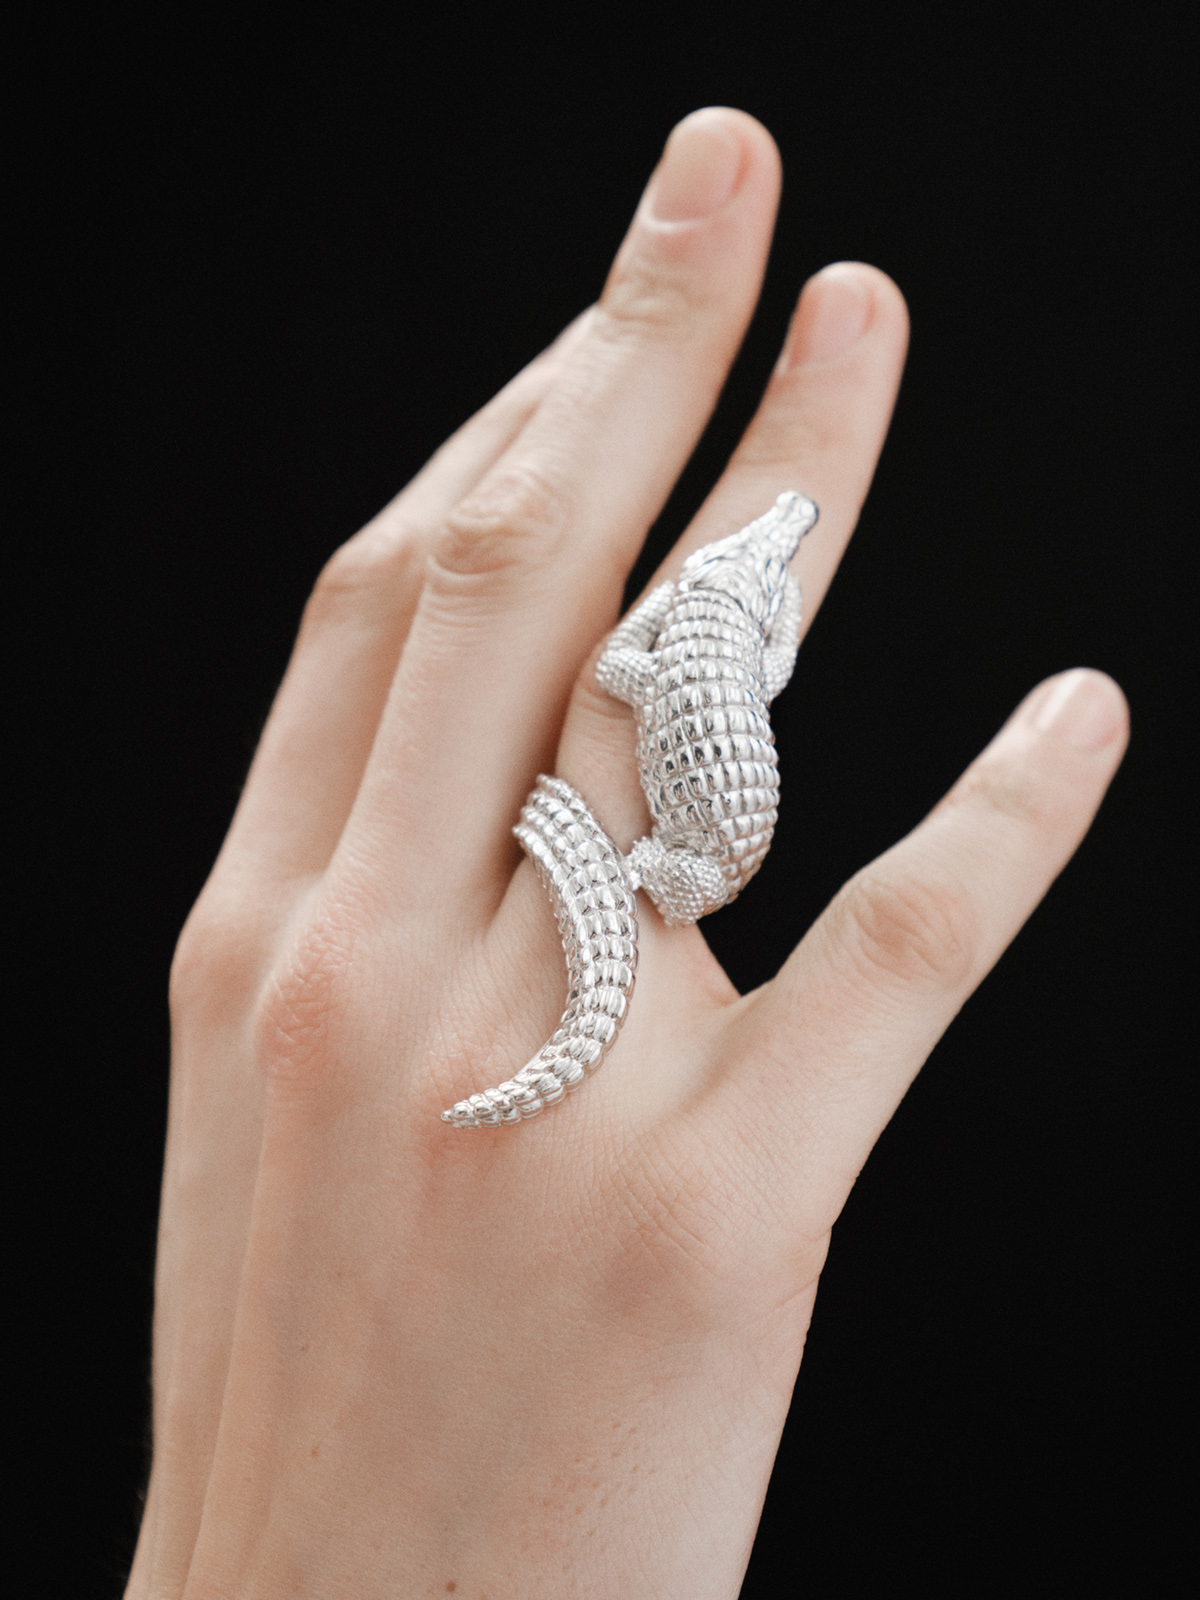 Large 925 silver ring shaped like crocodile